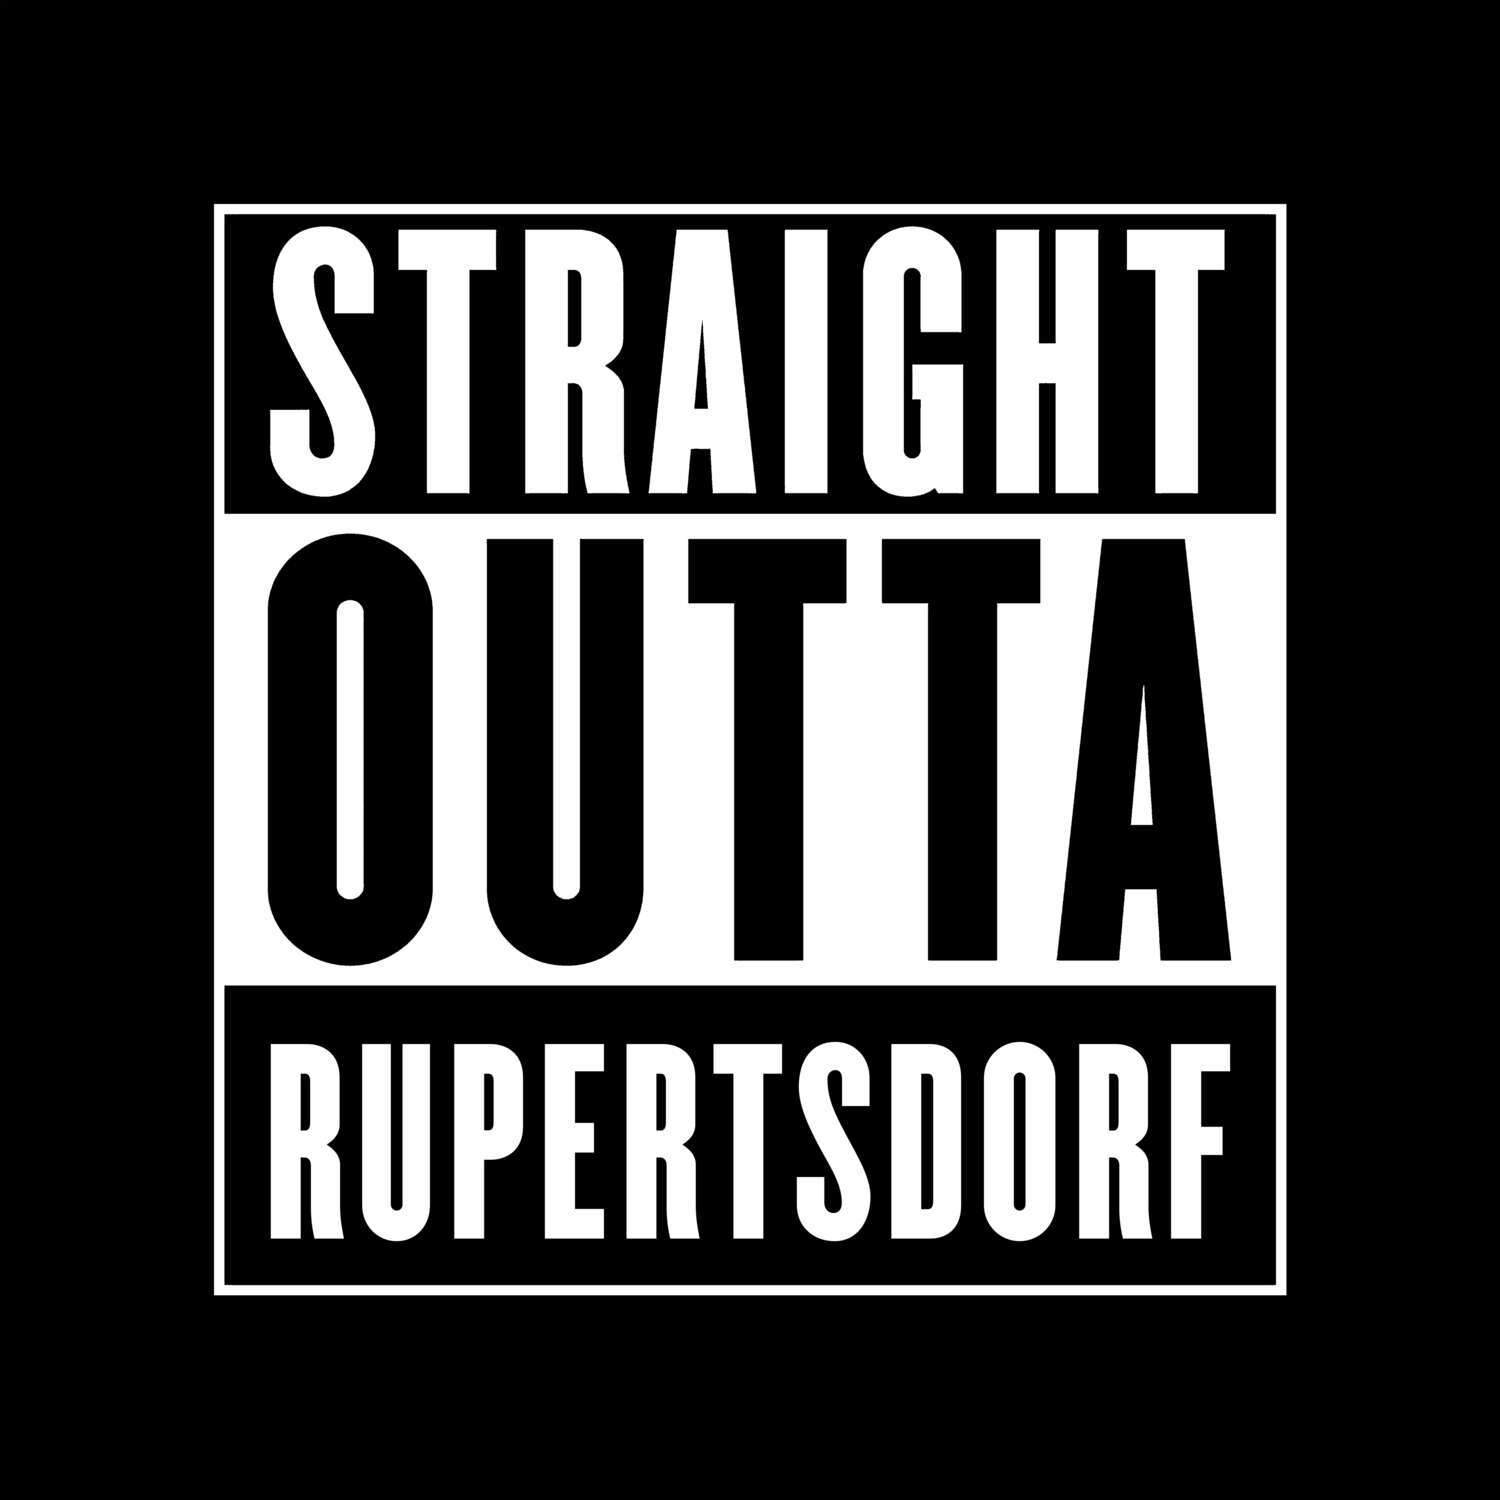 Rupertsdorf T-Shirt »Straight Outta«